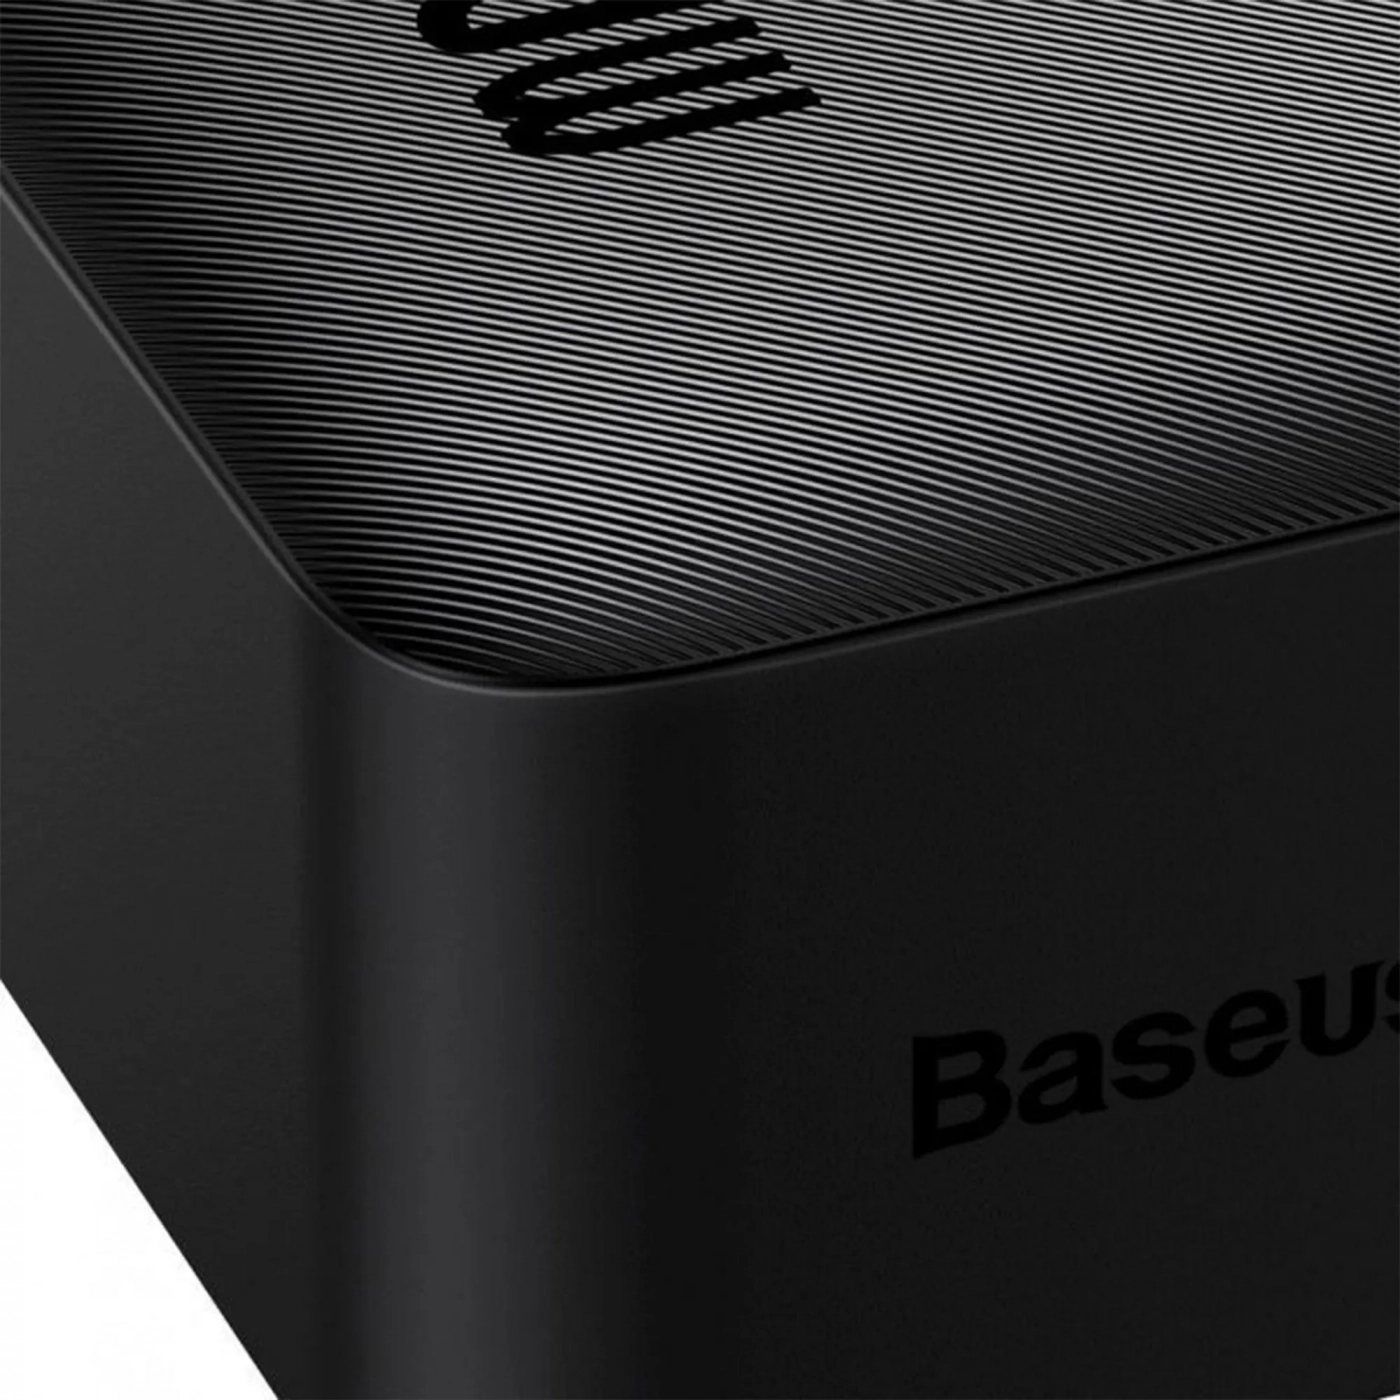 Купити Павербанк УМБ Baseus Bipow Digital Display Fast Charge Power Bank 30000mAh 20W Black Overseas Edition With Simple Series Charging Cable USB to Micro 25cm Black - фото 4